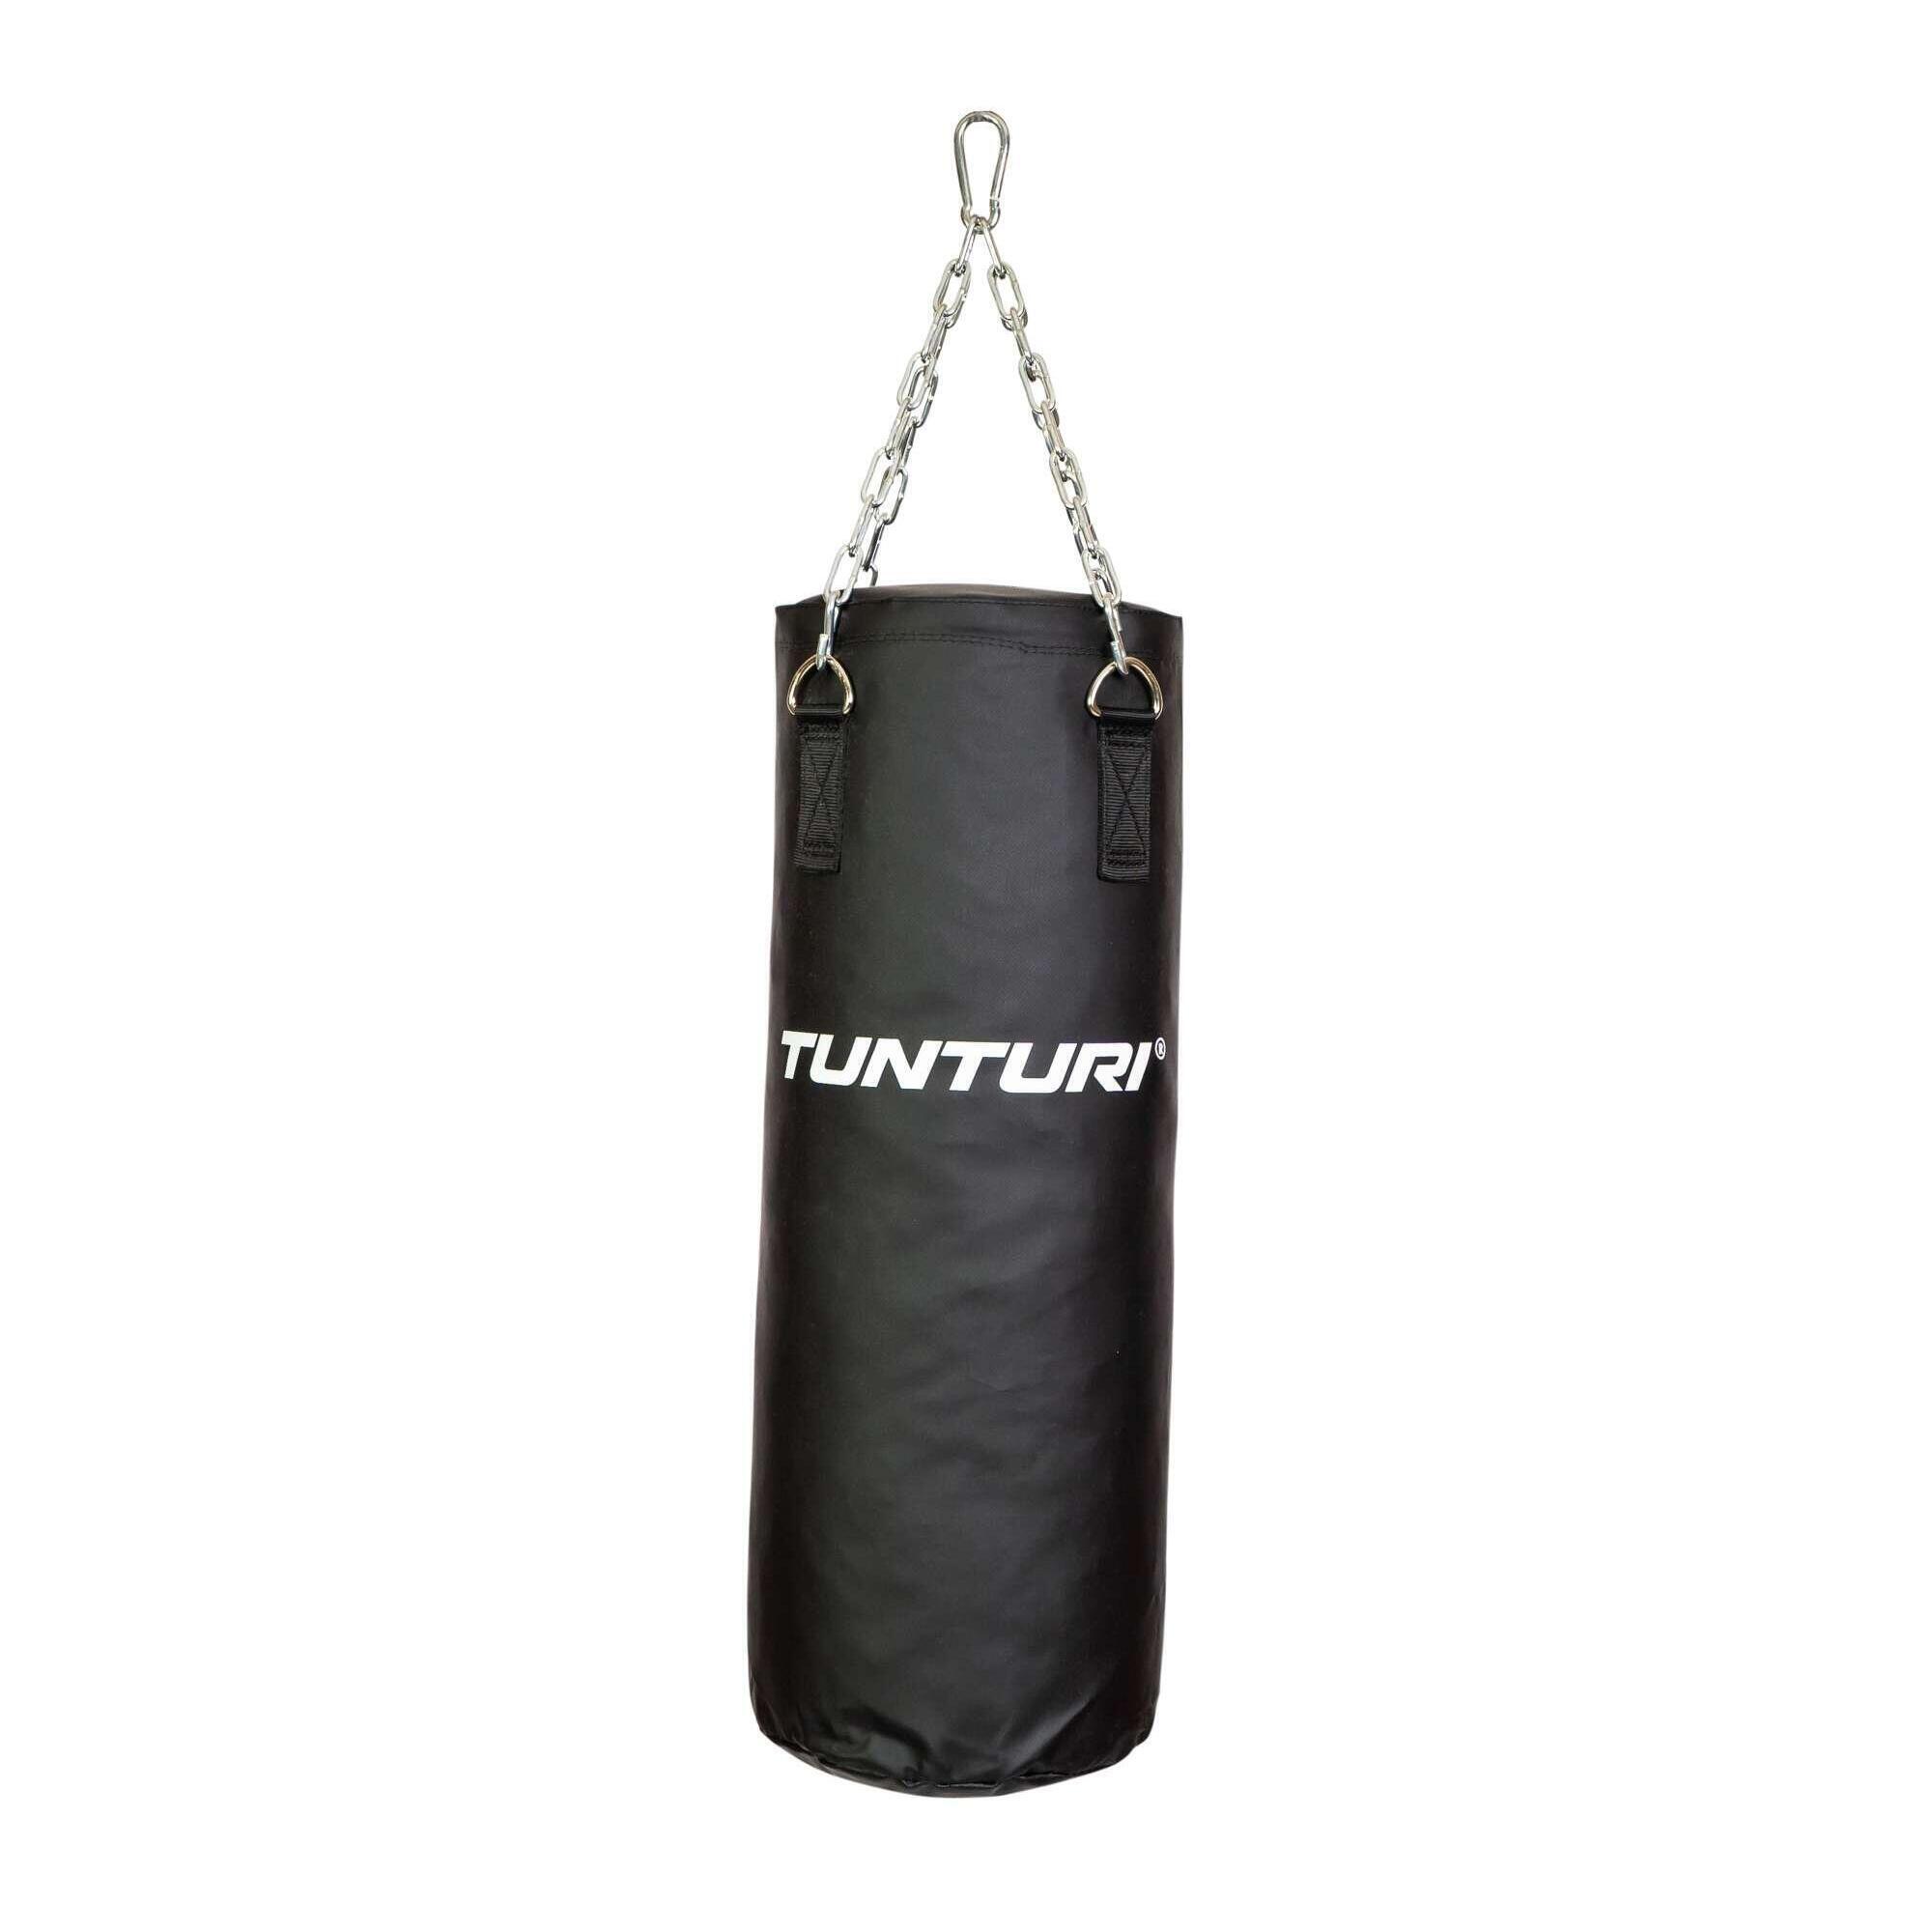 Боксерская груша - боксерская груша - боксерская груша - 70 см - заполнена, включая цепь TUNTURI, черный